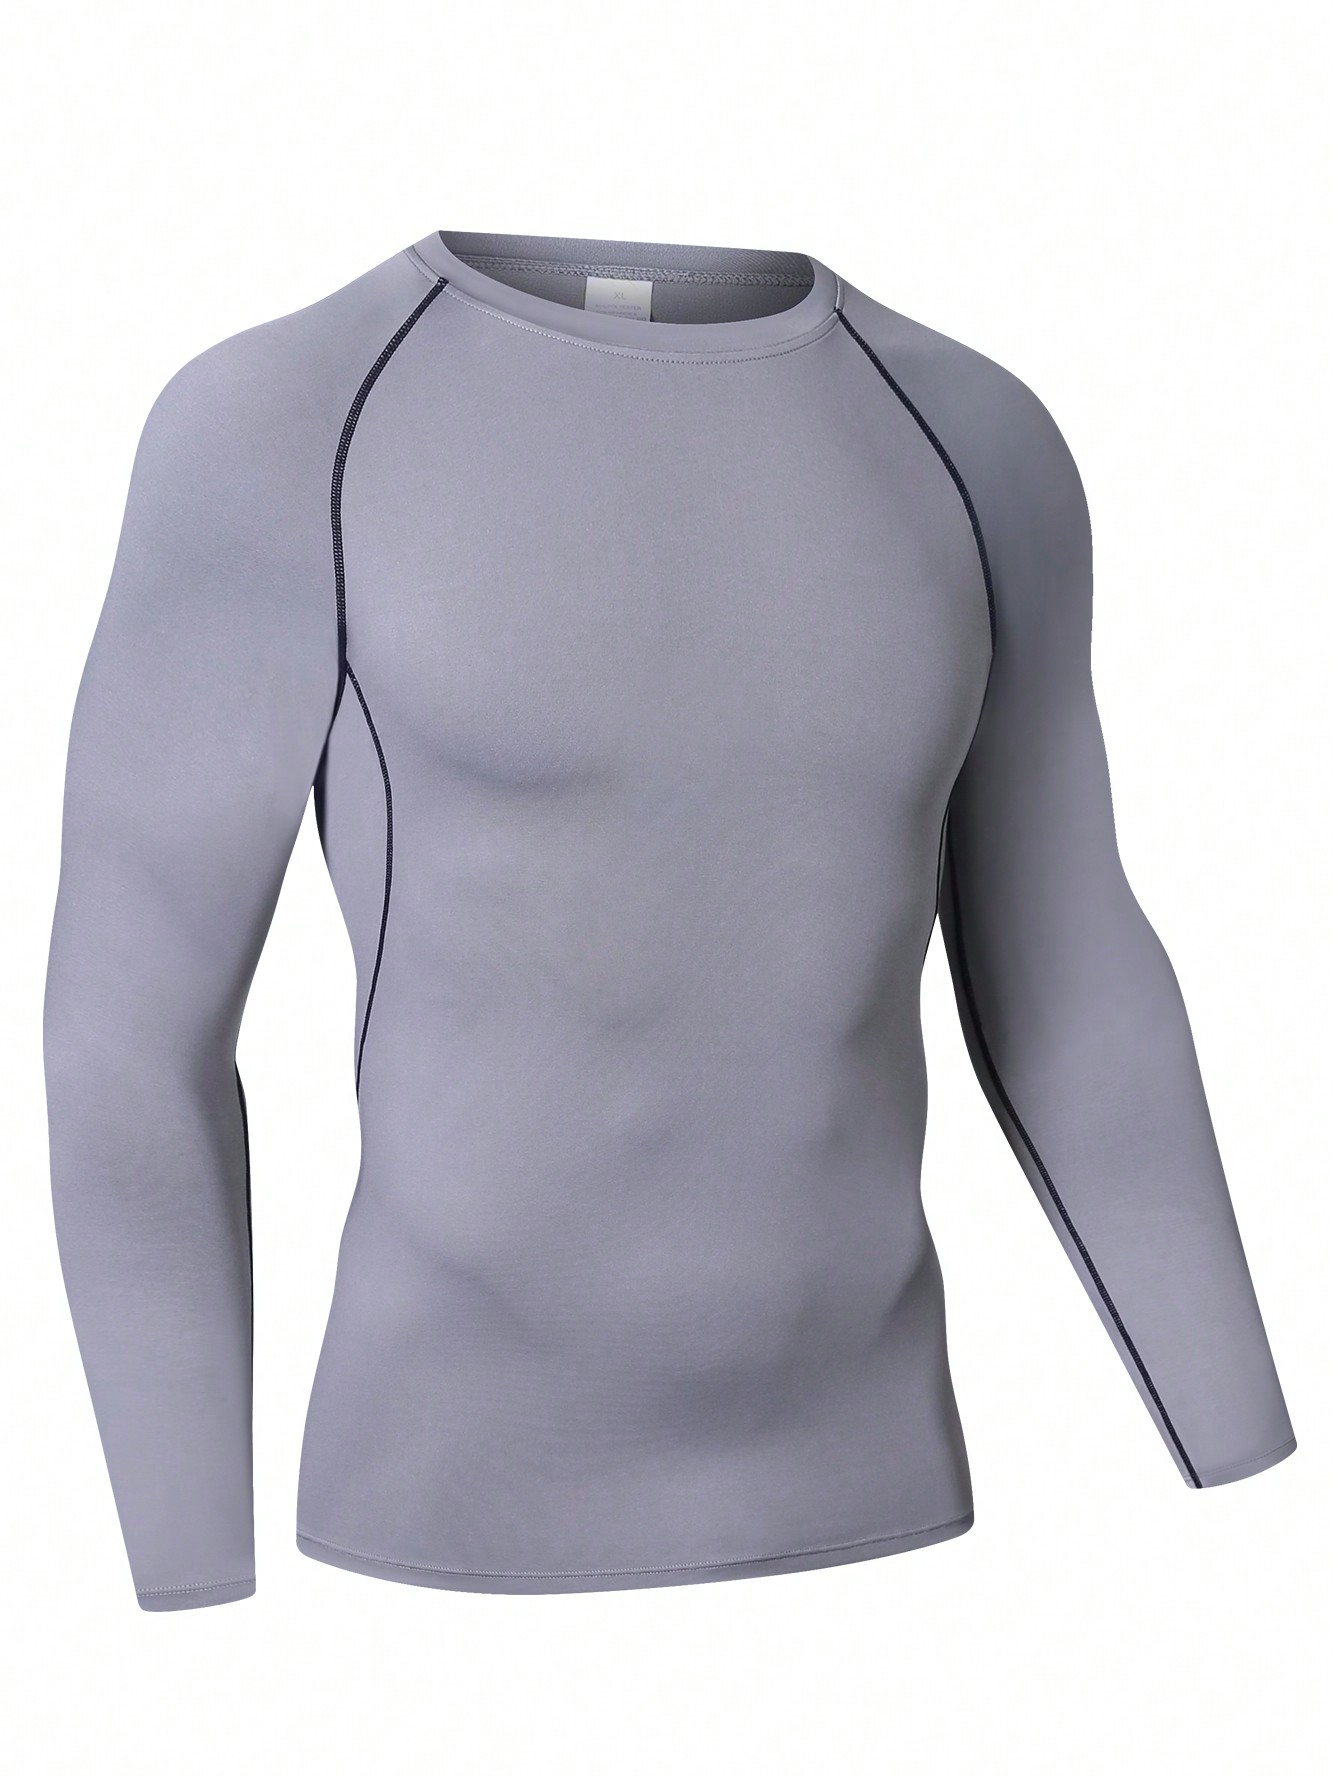 Мужская эластичная компрессионная рубашка для фитнеса с длинными рукавами, серый новинка 2021 походные и рыболовные рубашки gamakatsu спортивная быстросохнущая мужская одежда для рыбалки одежда для велоспорта и рыбалки